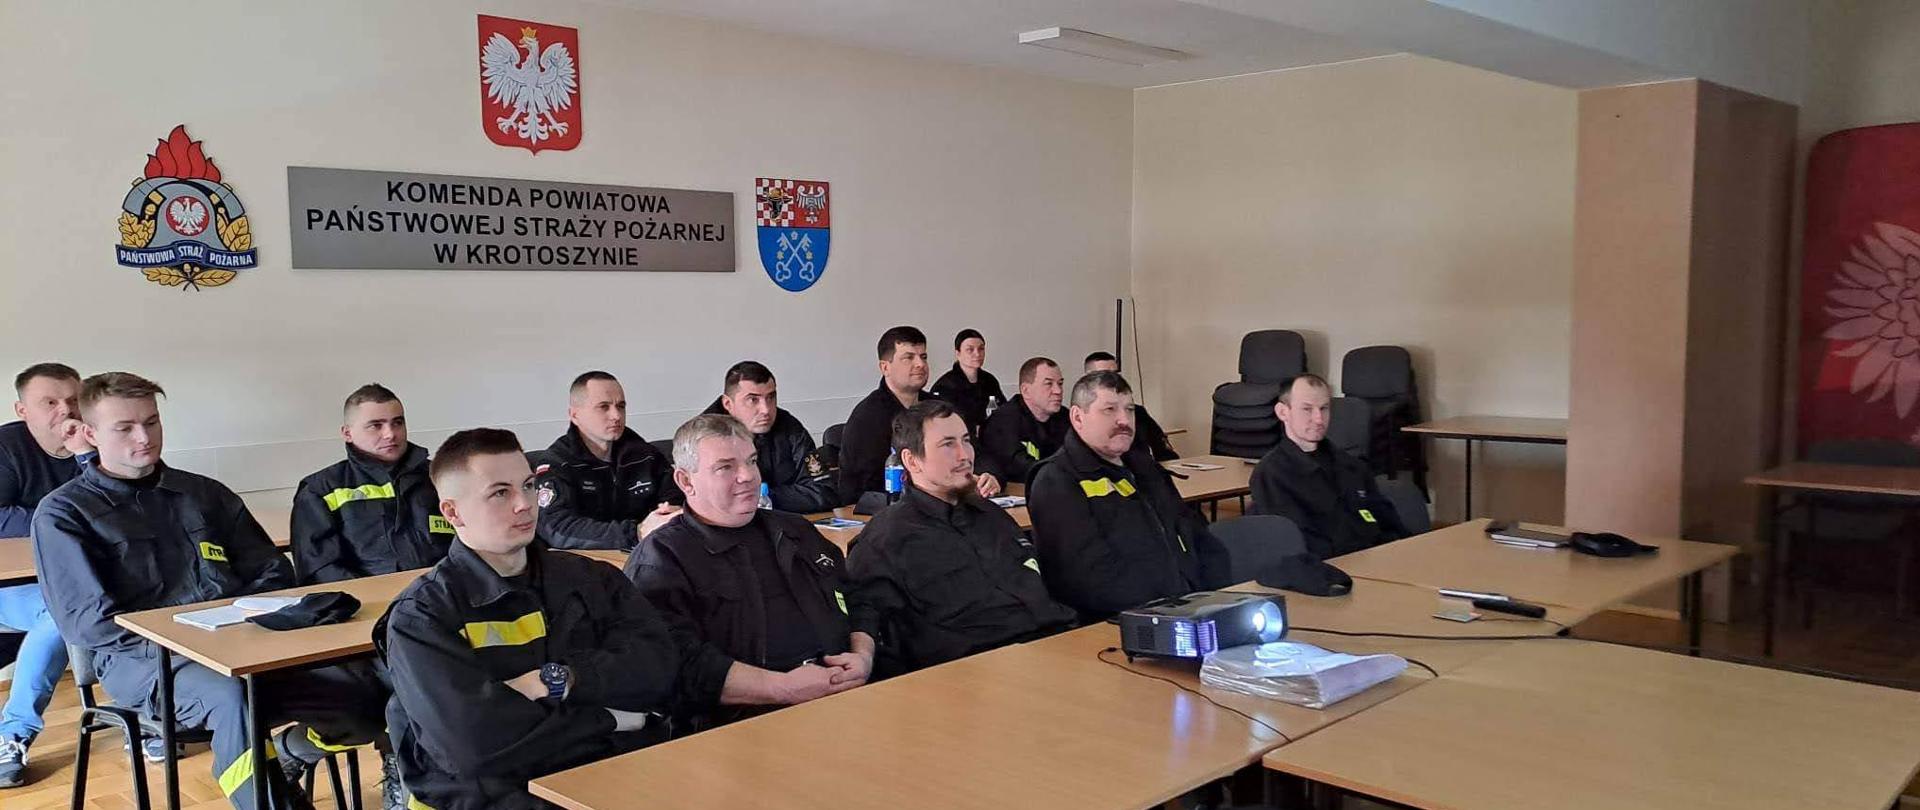 Na świetlicy komendy powiatowej PSP w Krotoszynie druhowie uczestniczą w szkoleniu dla naczelników ochotniczych straży pożarnych. Szkolenie prowadzone w formie wideokonferencji za pomocą materiałów multimedialnych